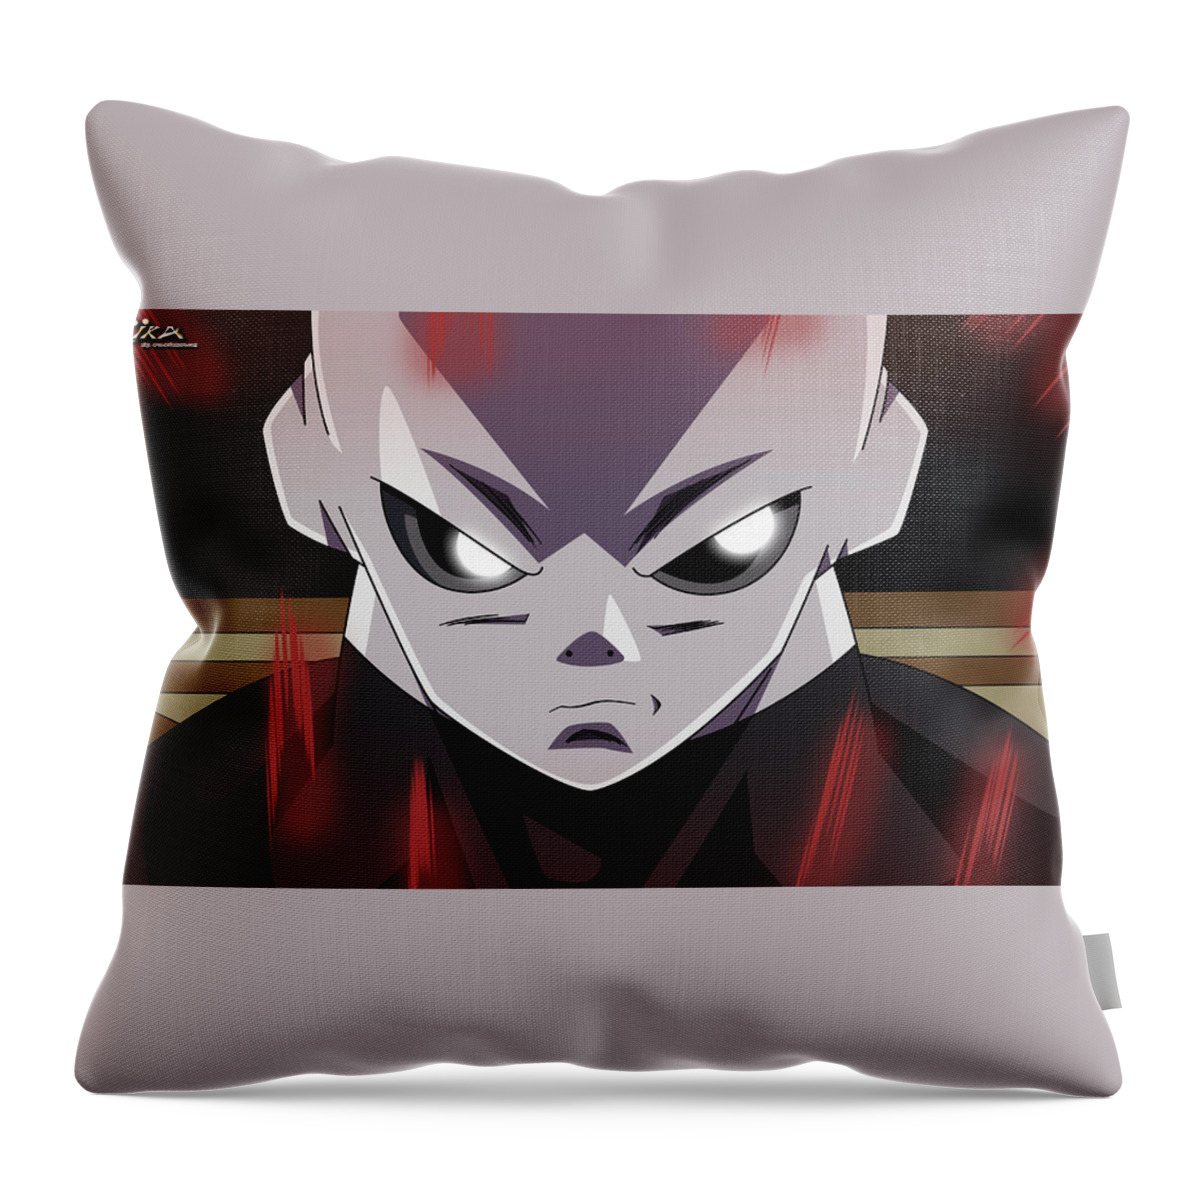 Goku New Form Throw Pillow featuring the digital art Dragon Ball Super - Jiren by Babbal Kumar